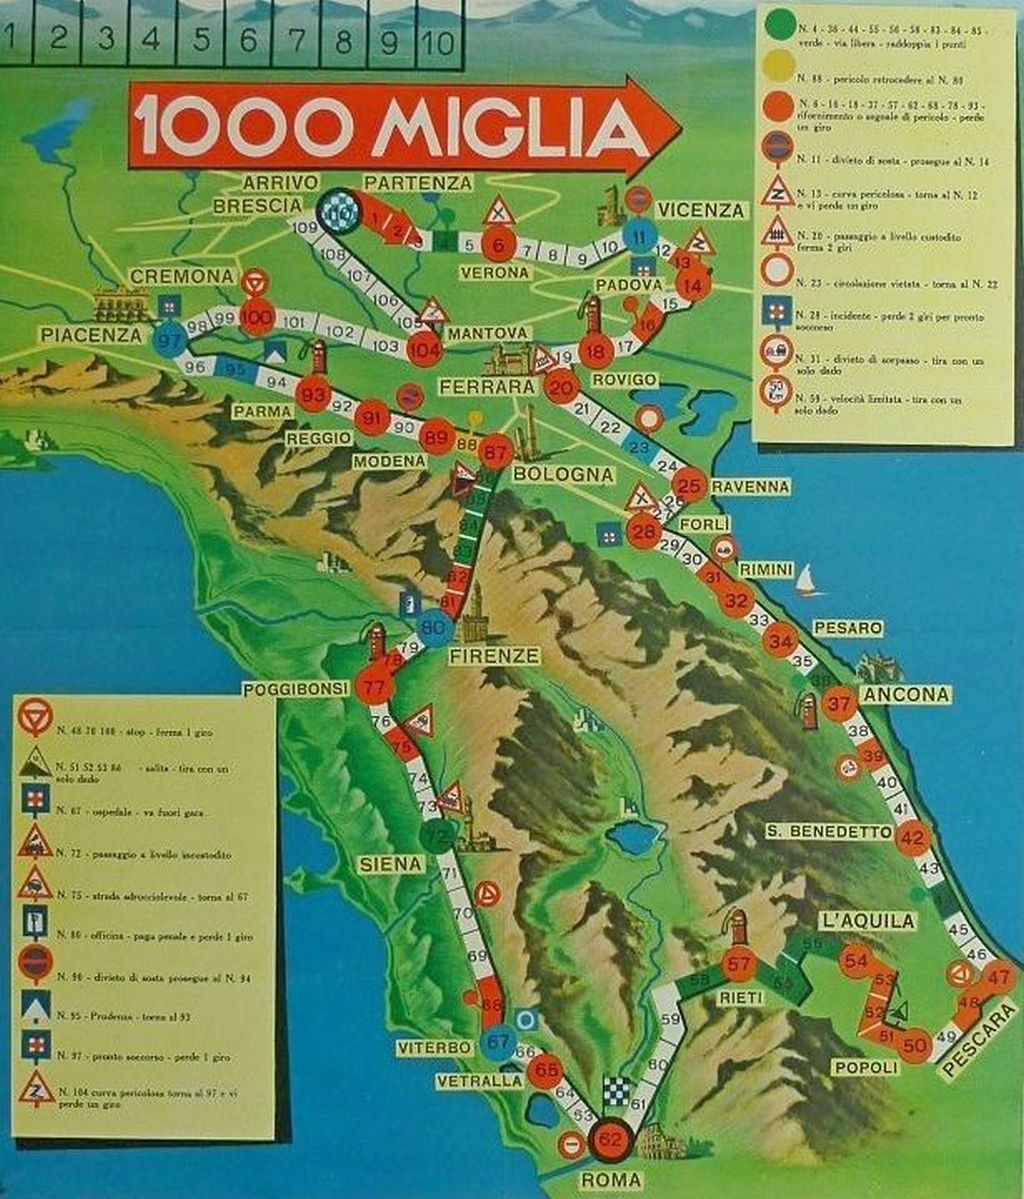 El recorrido de la Mille Miglia variaba de un año a otro pero salvo en 1940 siempre fue Brescia-Roma -Brescia